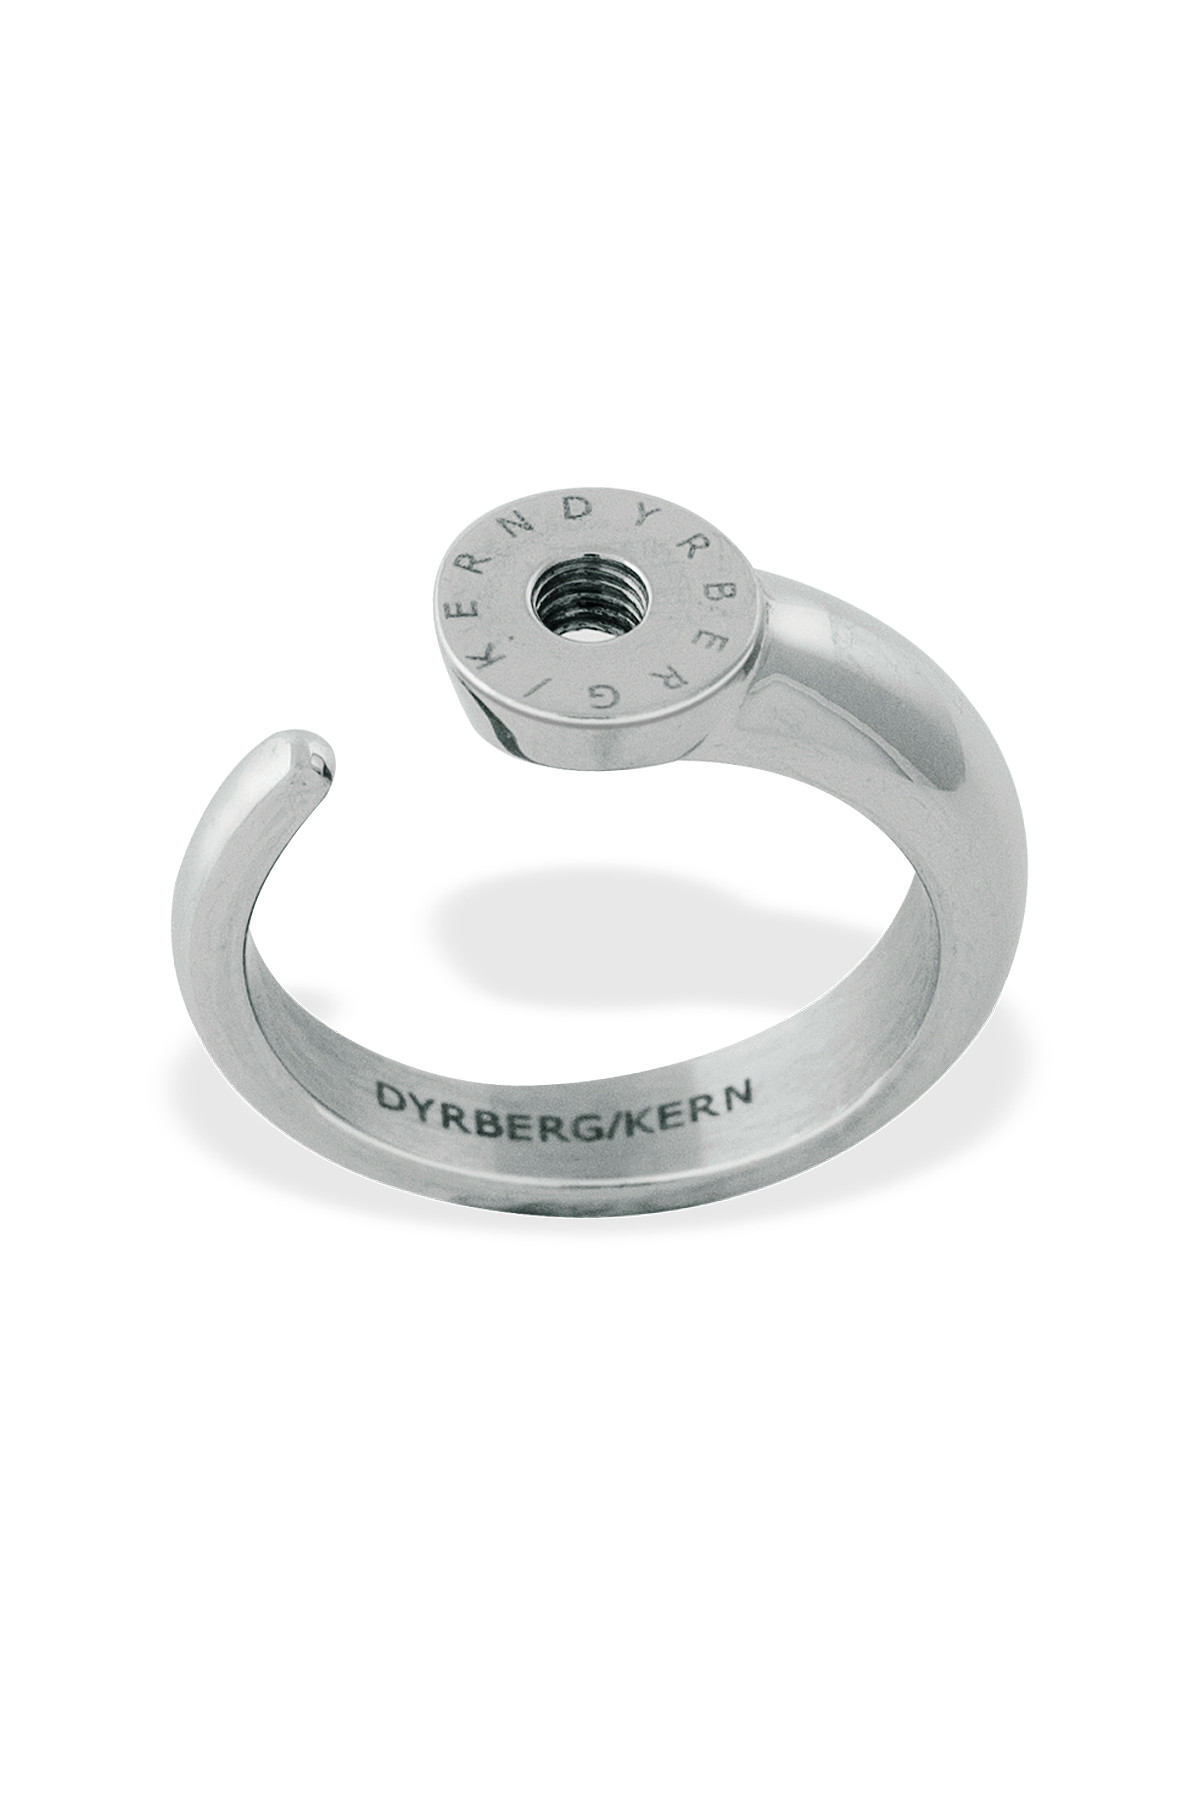 Billede af Dyrberg/Kern Ring Ring, Farve: Sølv, Størrelse: III/57, Dame hos Dyrberg/Kern